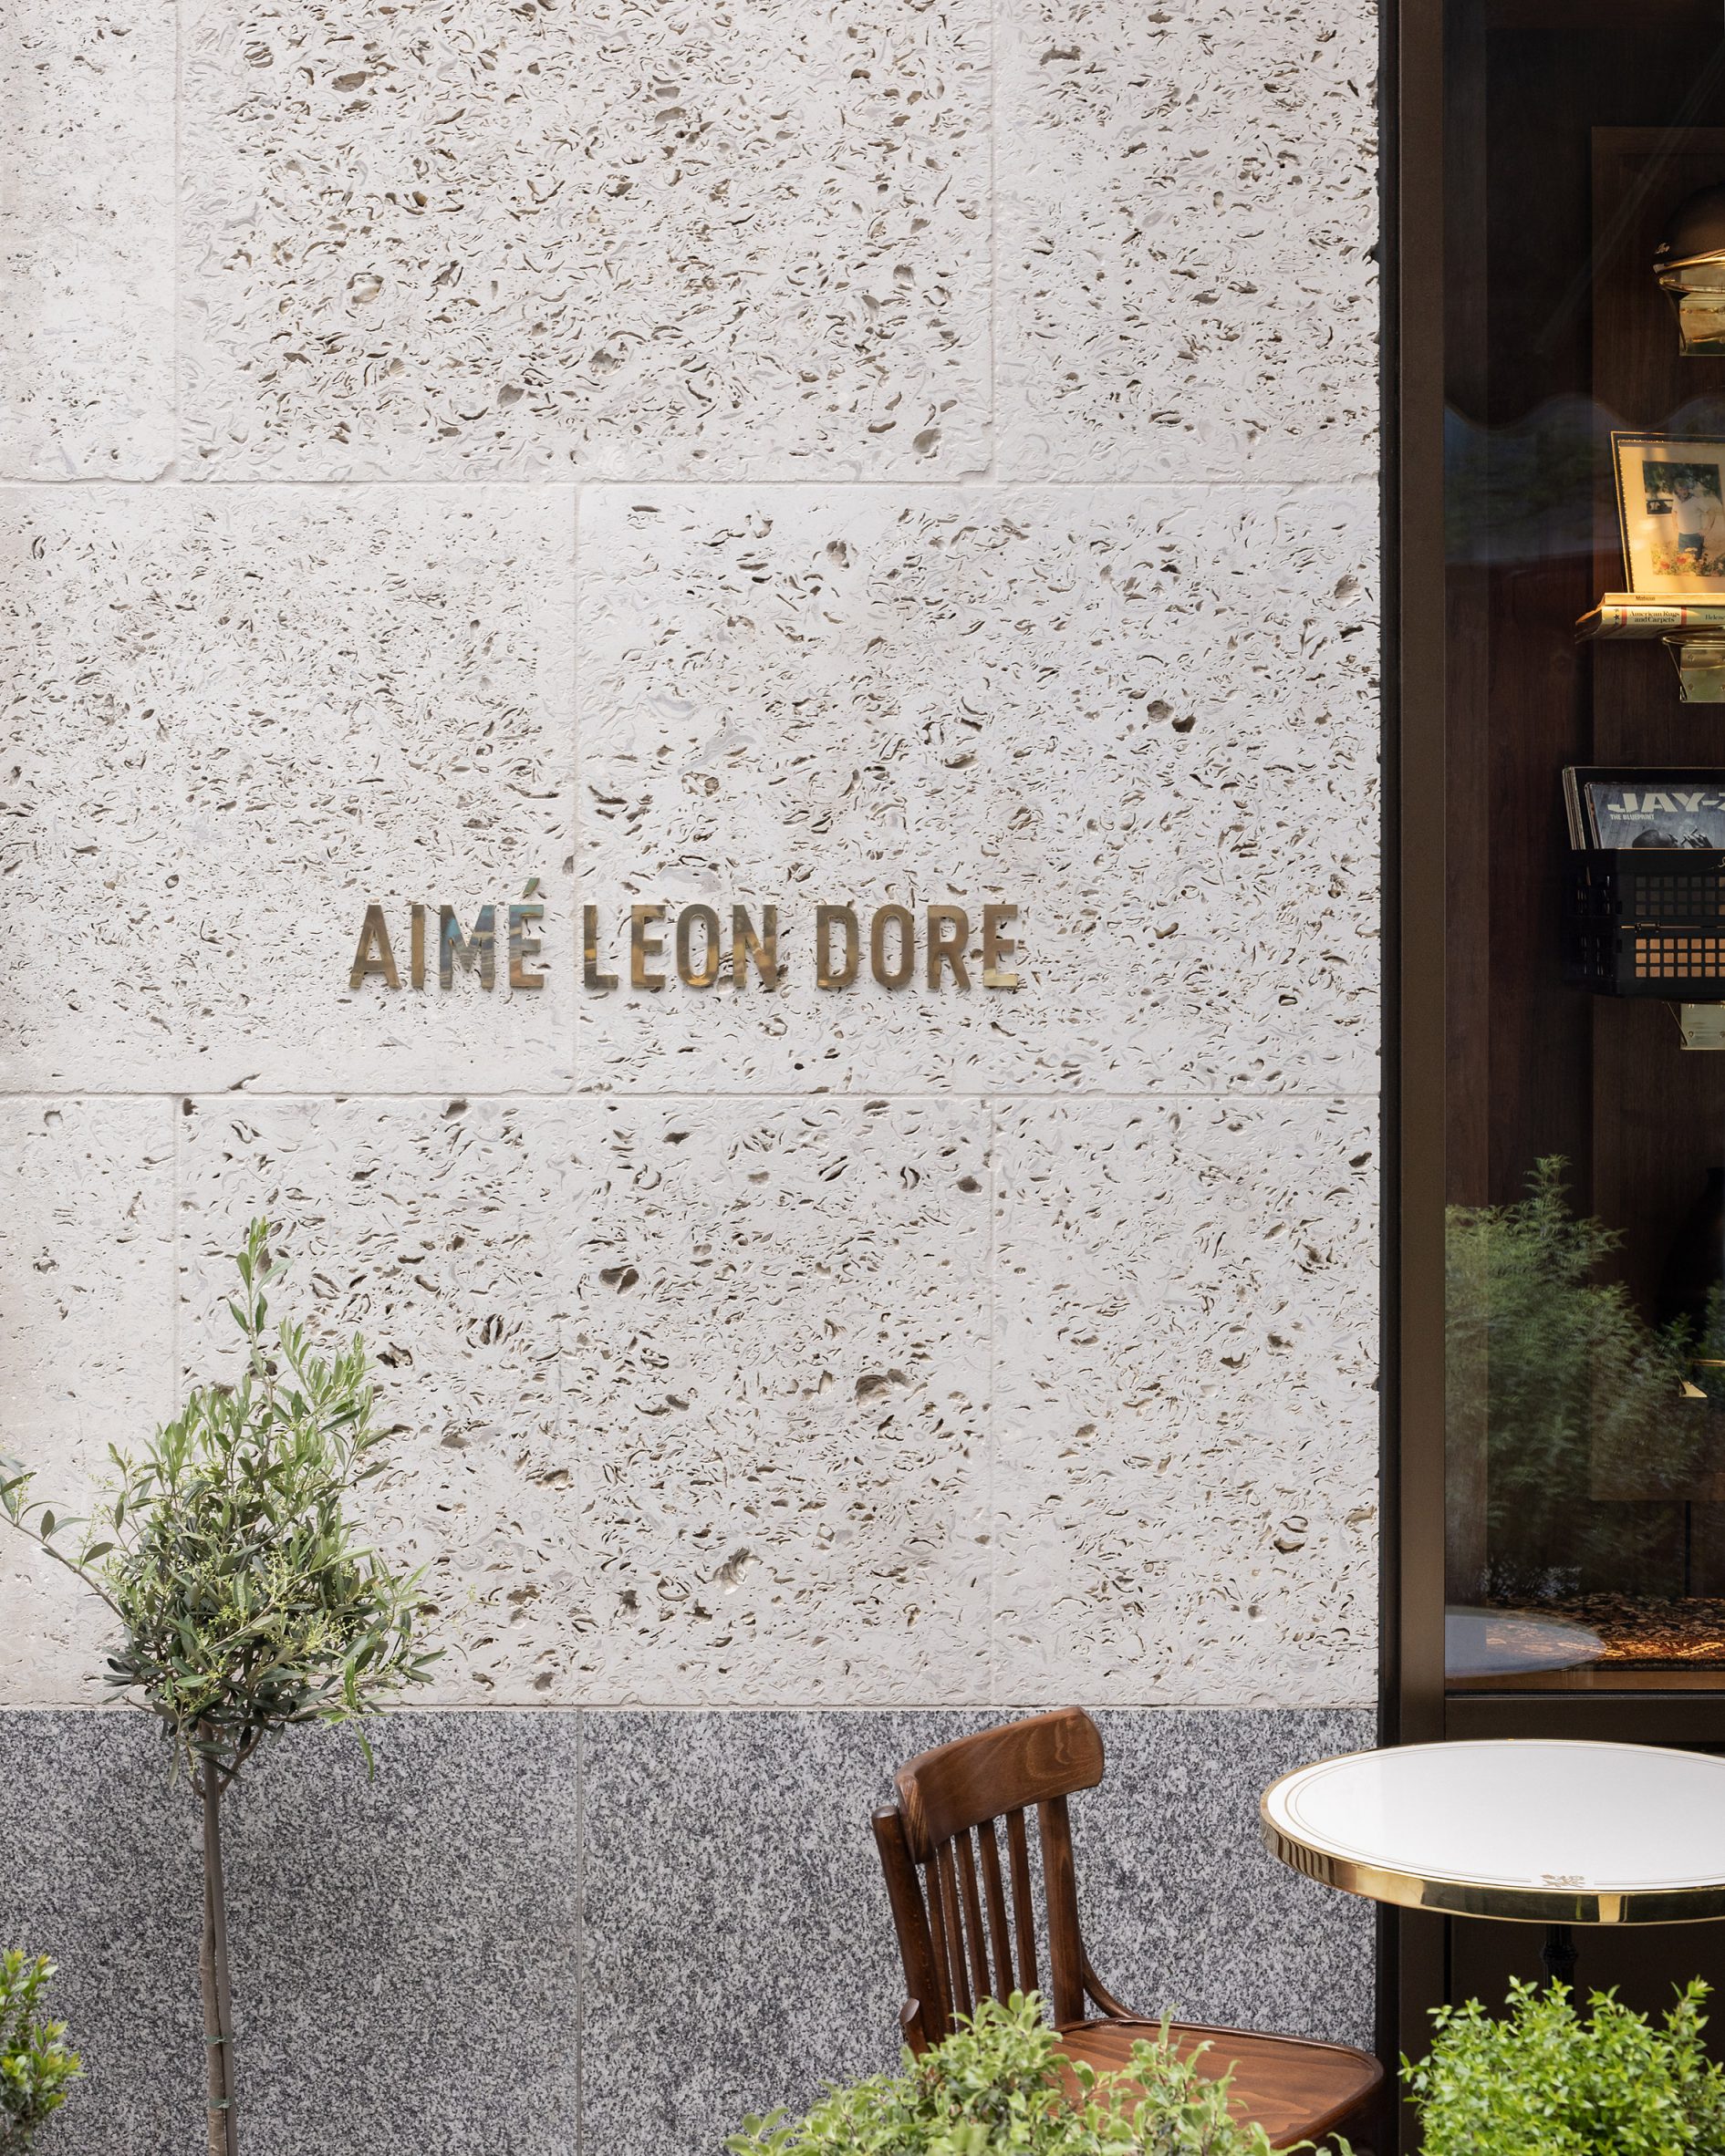 Aimé Leon Dore's London boutique homages modernist architect Adolf Loos